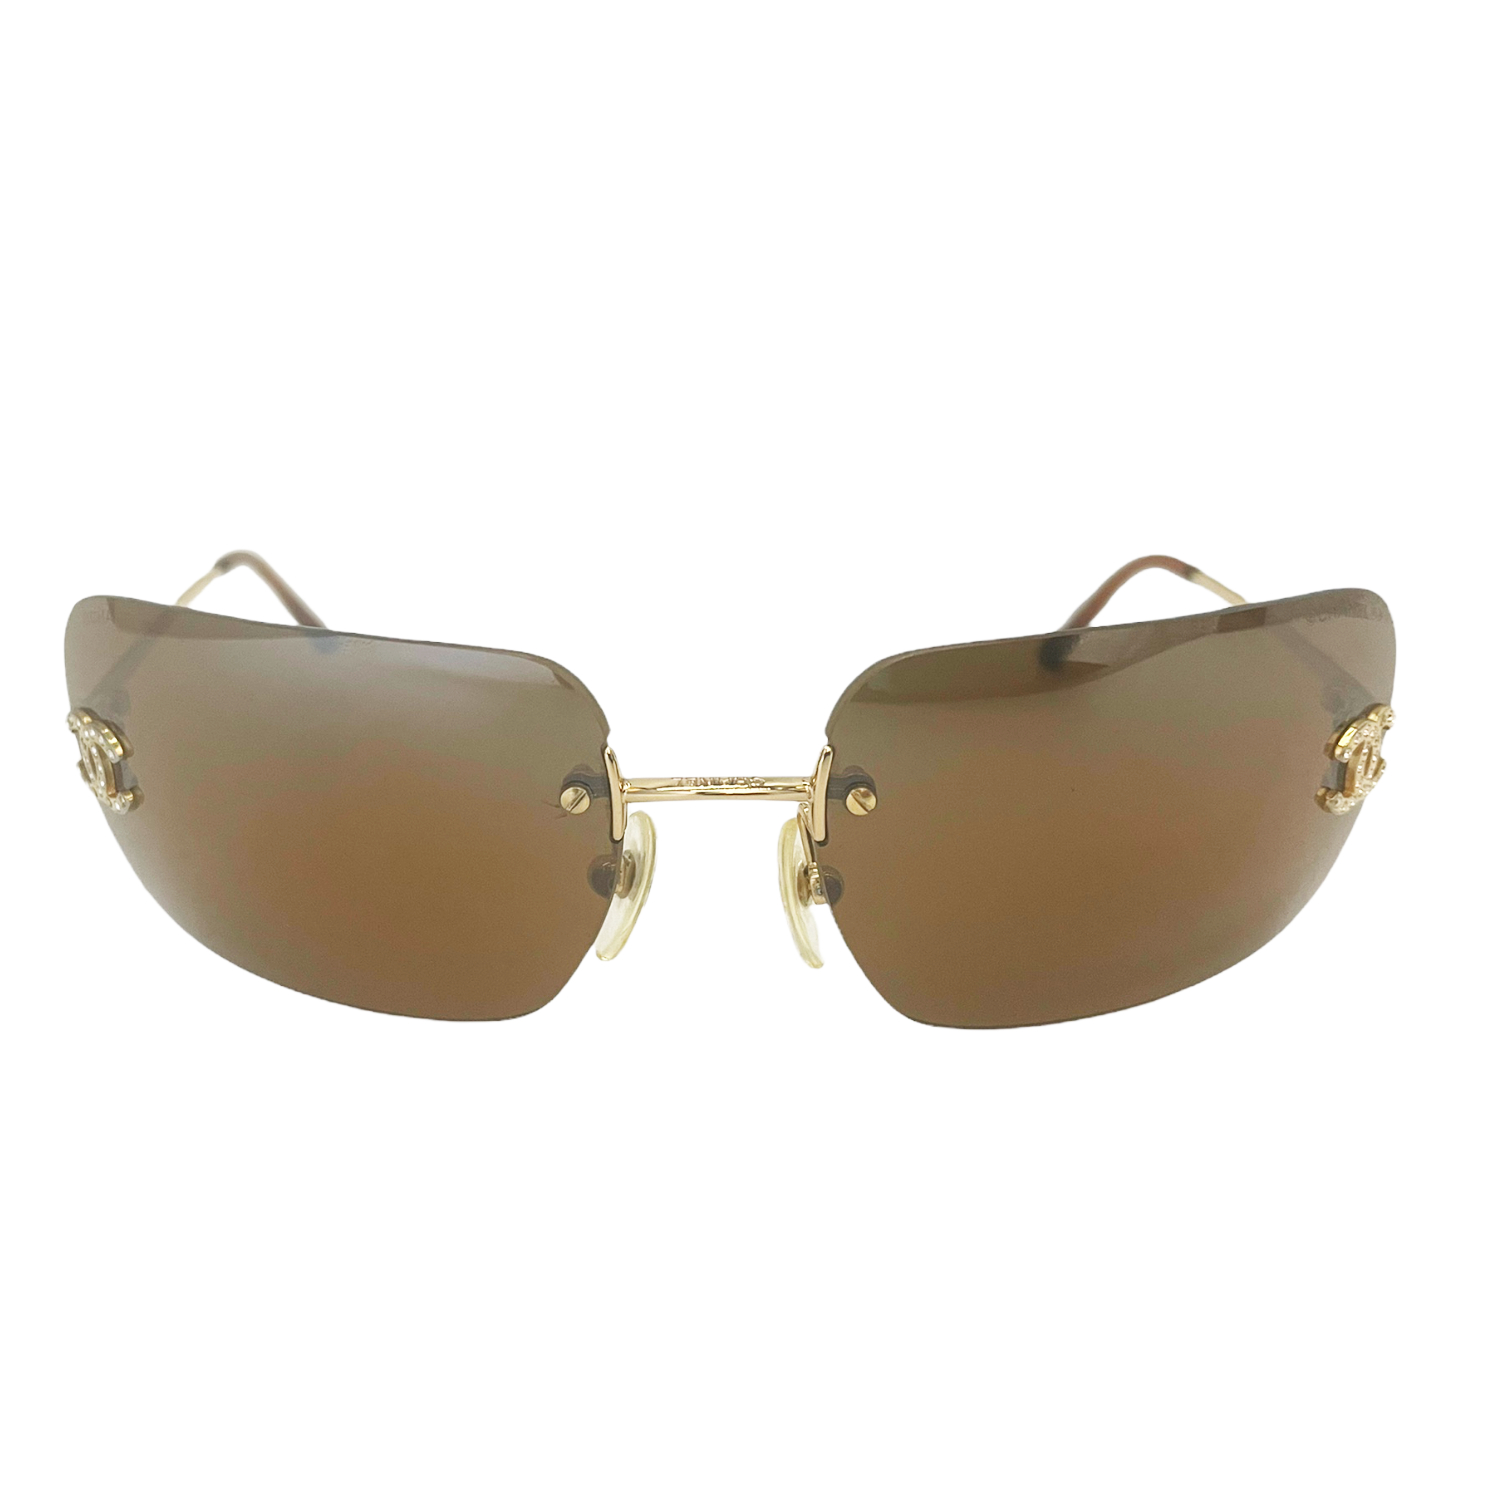 Chanel Diamante Rimless Sunglasses in Brown / Gold